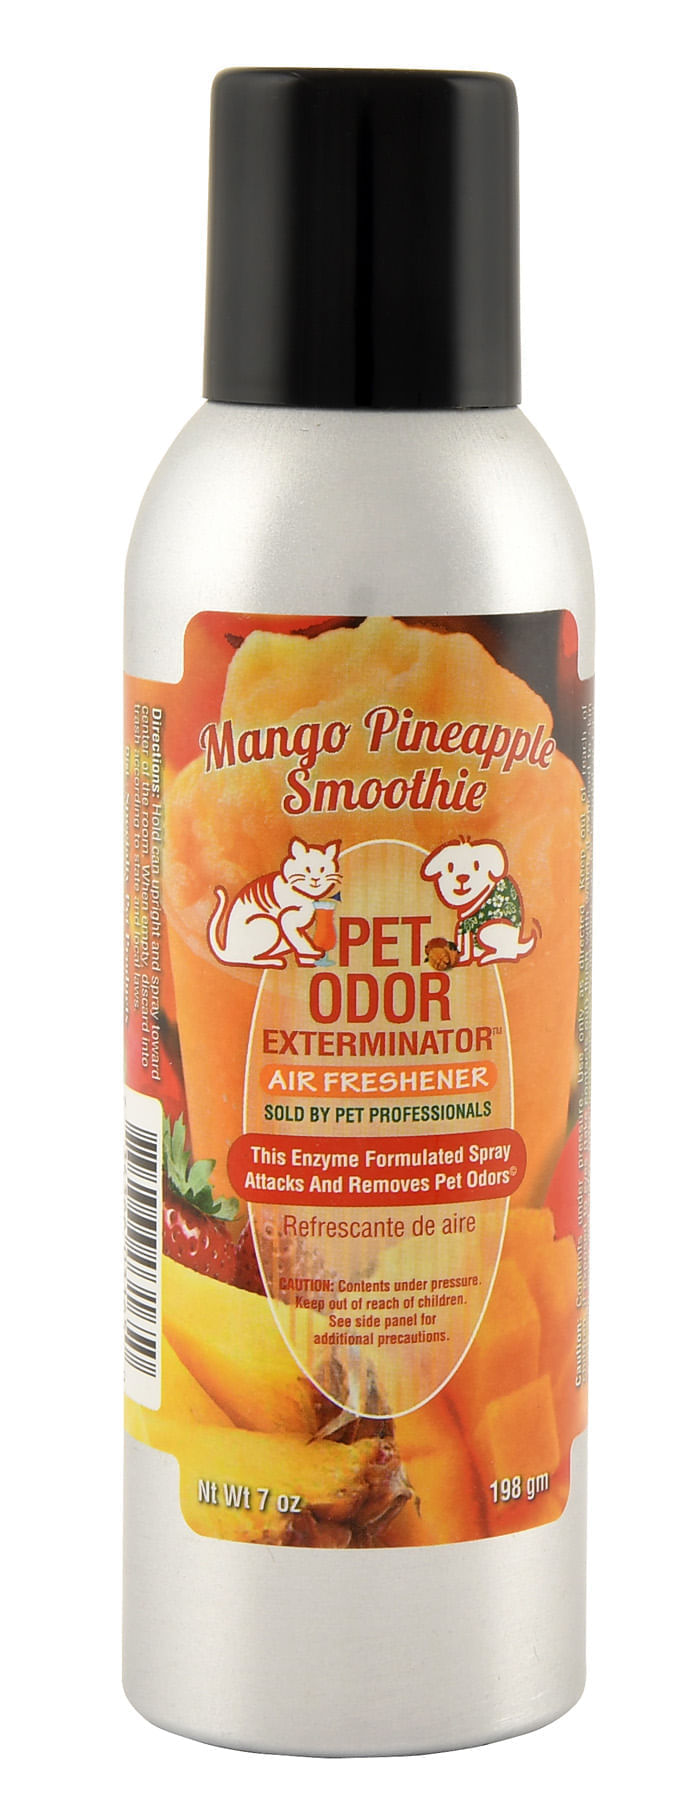 Pet-Odor-Exterminator-Spray-Mango-Pineapple-Smoothie